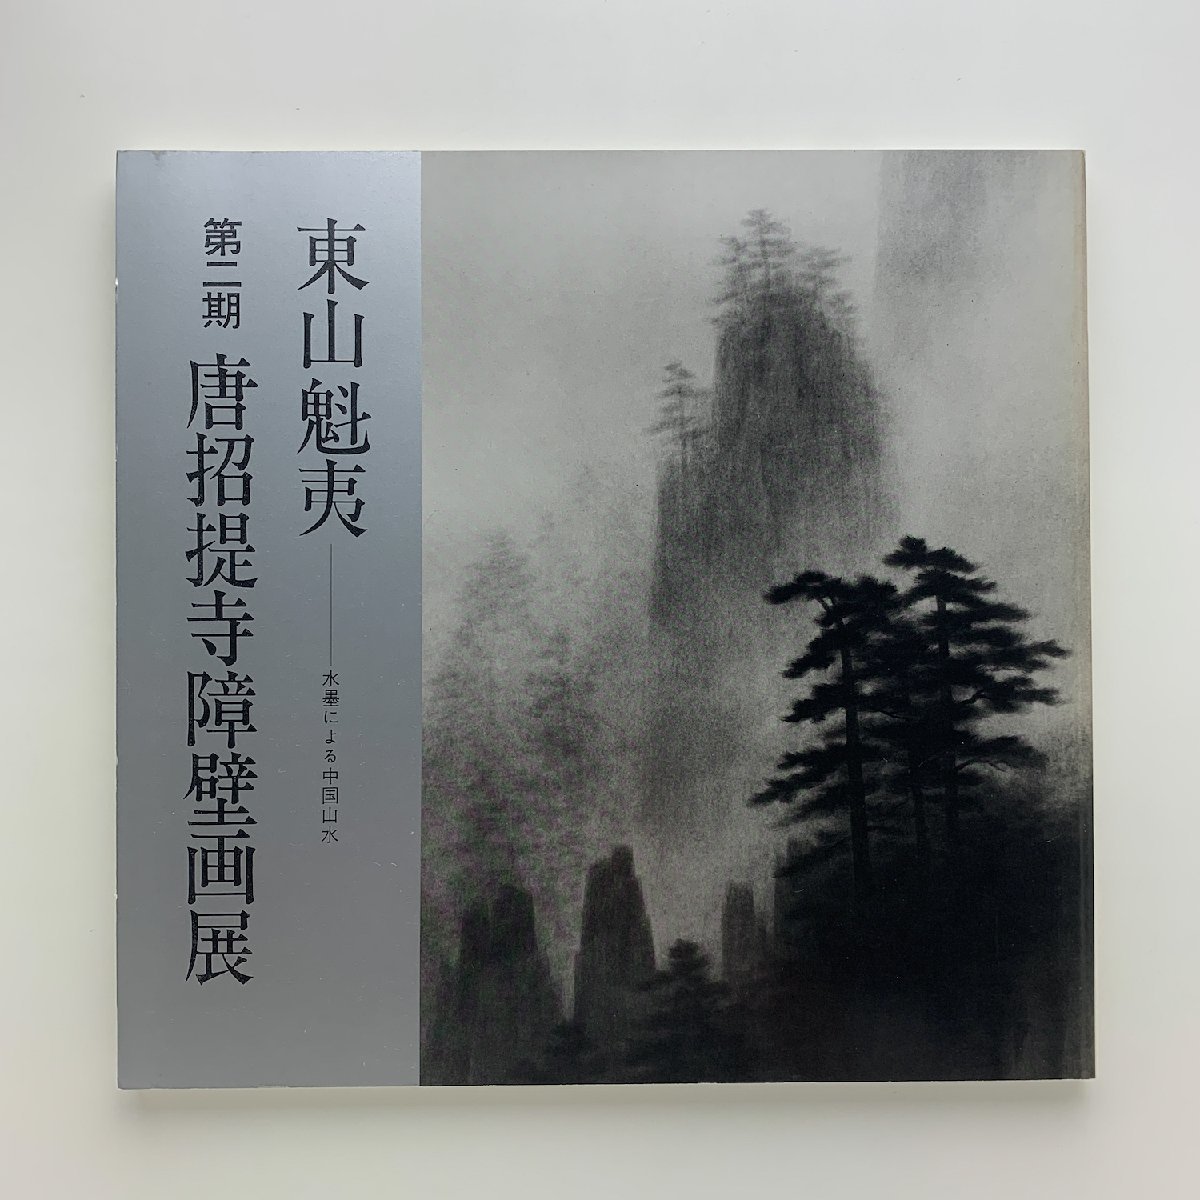 काई हिगाशियामा स्याही में चीनी परिदृश्य द्वितीय अवधि तोशोदाईजी दीवार पेंटिंग प्रदर्शनी 1980 मित्सुकोशी कला संग्रहालय, वगैरह।, चित्रकारी, कला पुस्तक, कार्यों का संग्रह, सचित्र सूची